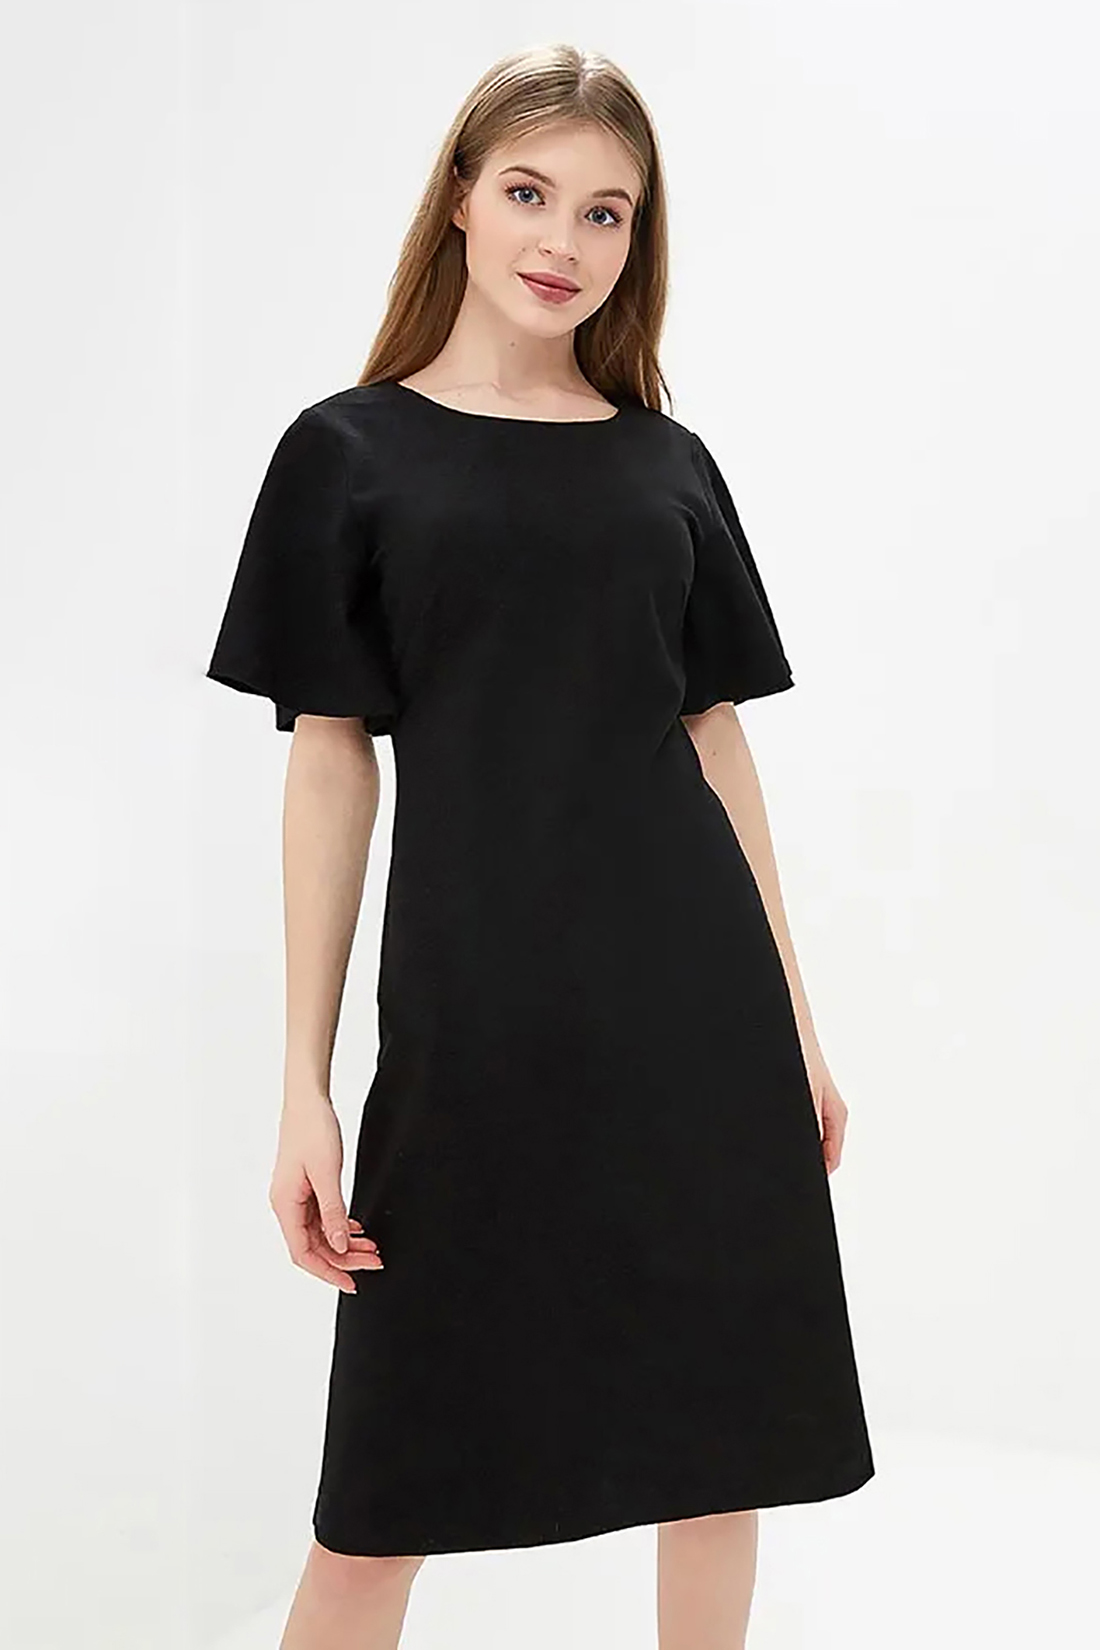 Платье с вырезом на спине (арт. baon B459028), размер XXL, цвет черный Платье с вырезом на спине (арт. baon B459028) - фото 3